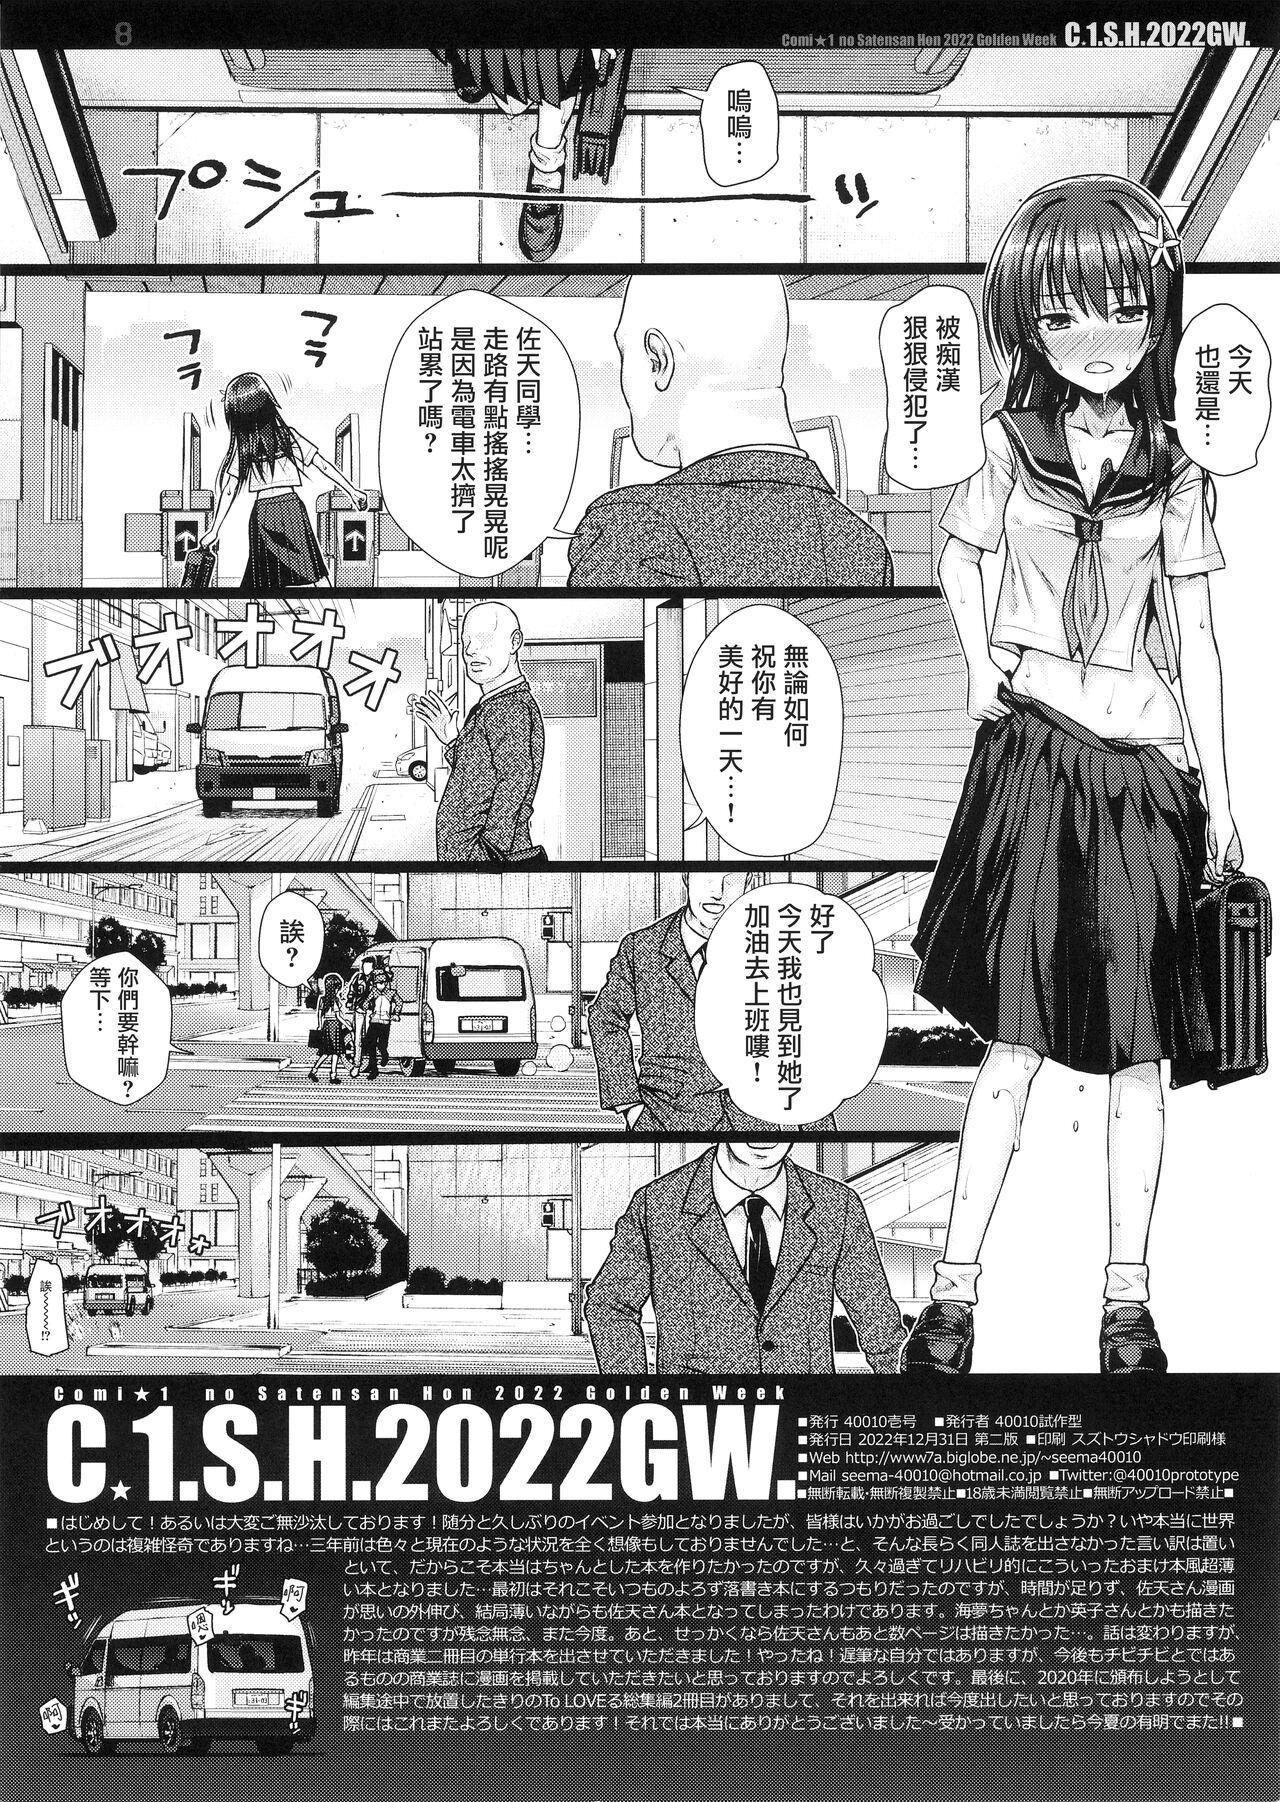 C☆1.S.H.2022GW. 9